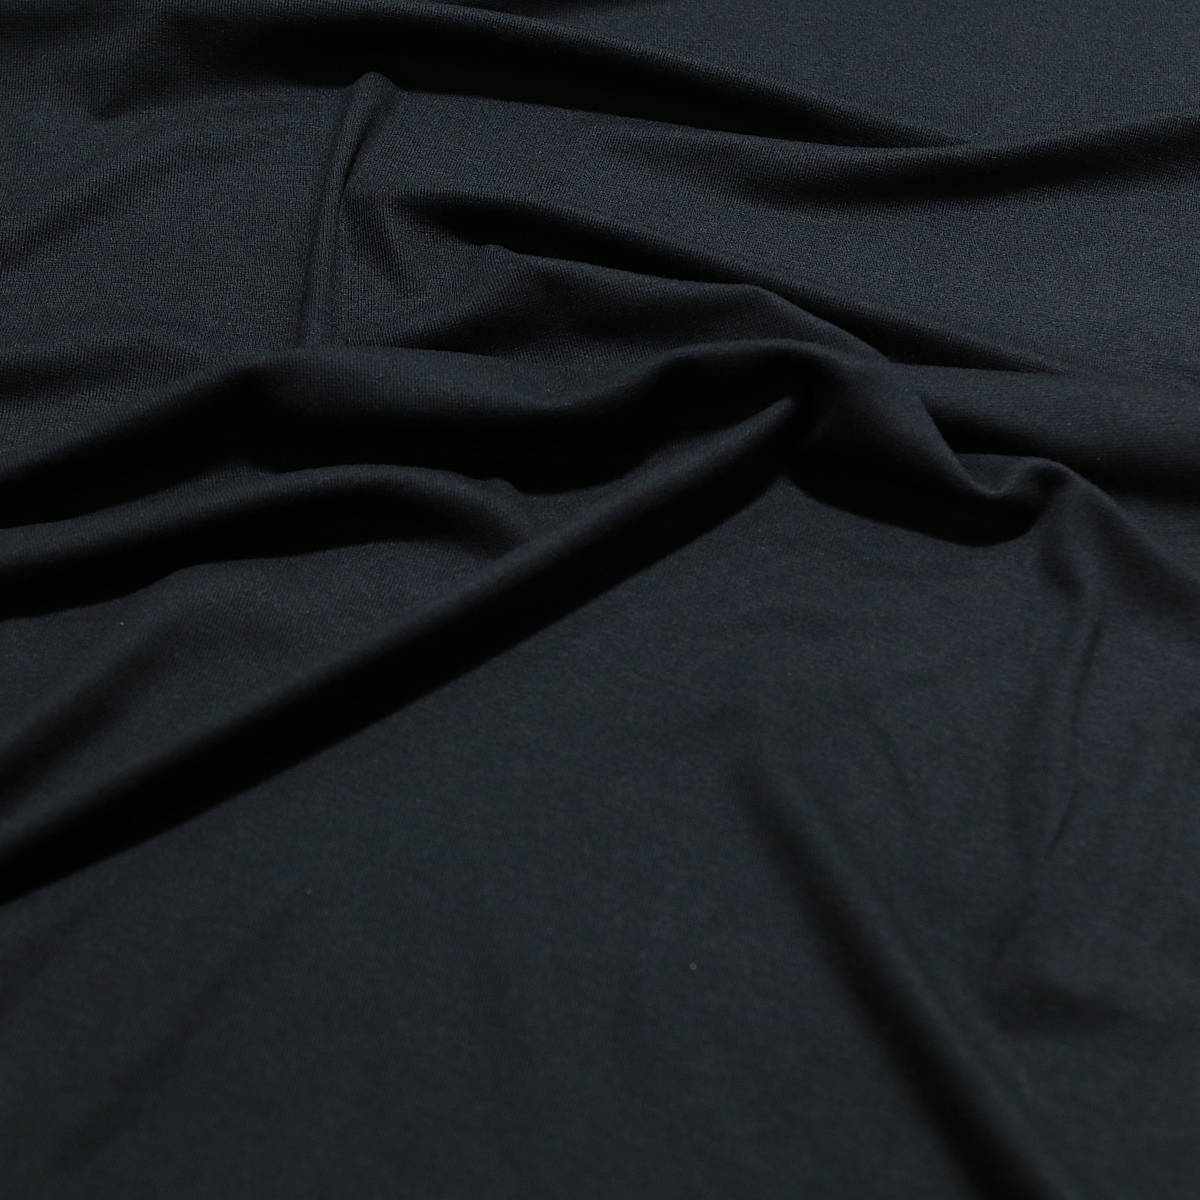 Baumwoll Jersey mit Elasthan weicher Bekleidungs-Jersey für Kleider und Shirts